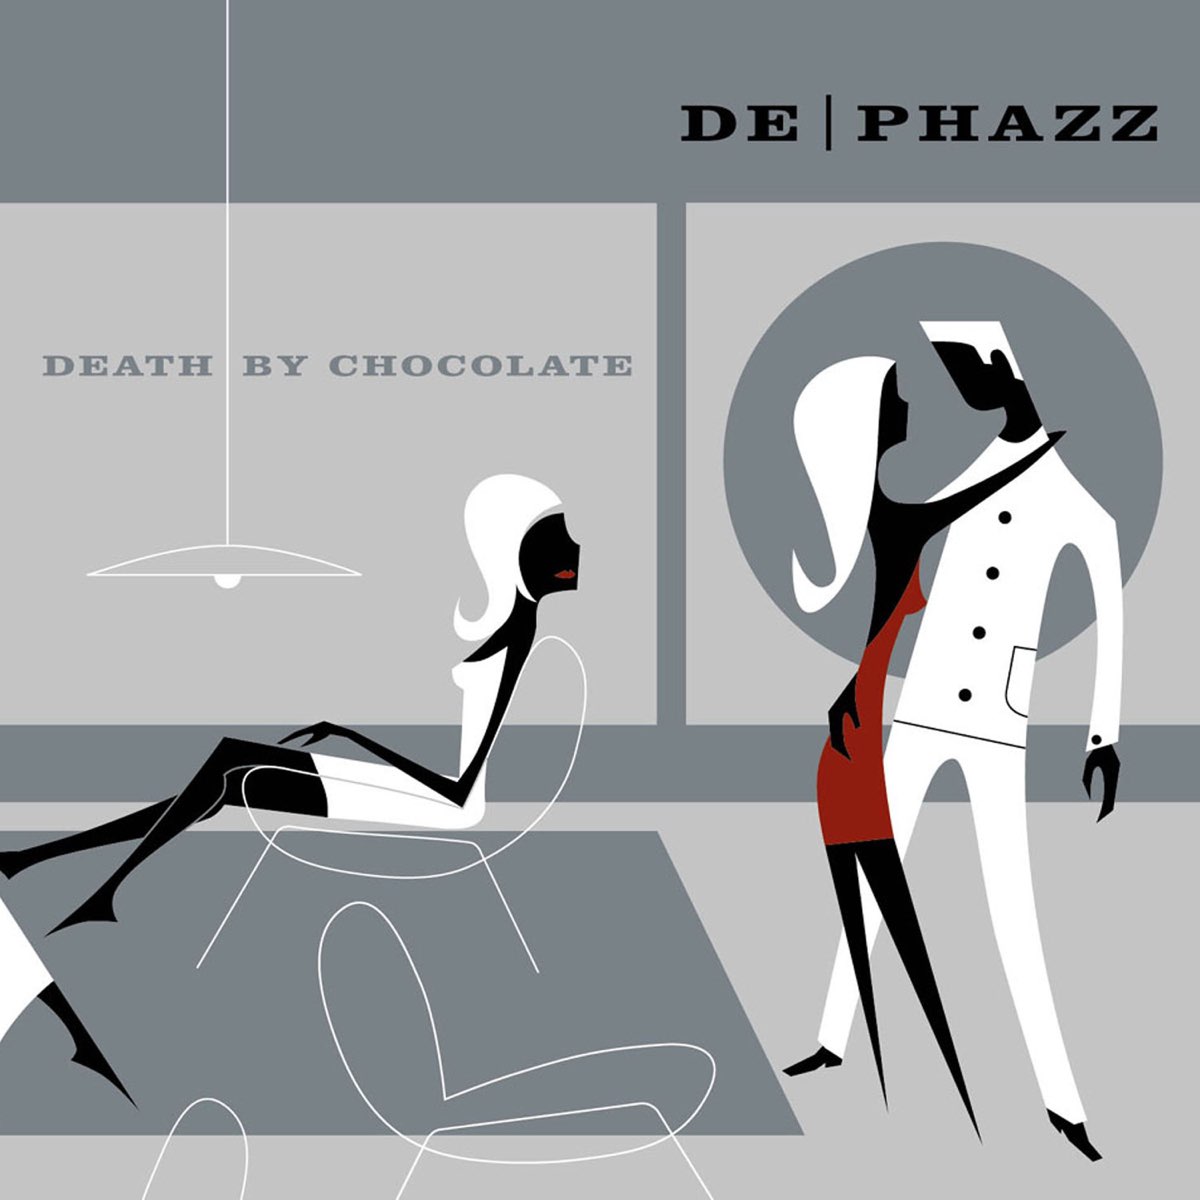 Death By Chocolate — третий студийный альбом электронной группы De-Phazz. Он был выпущен в 2001 году.